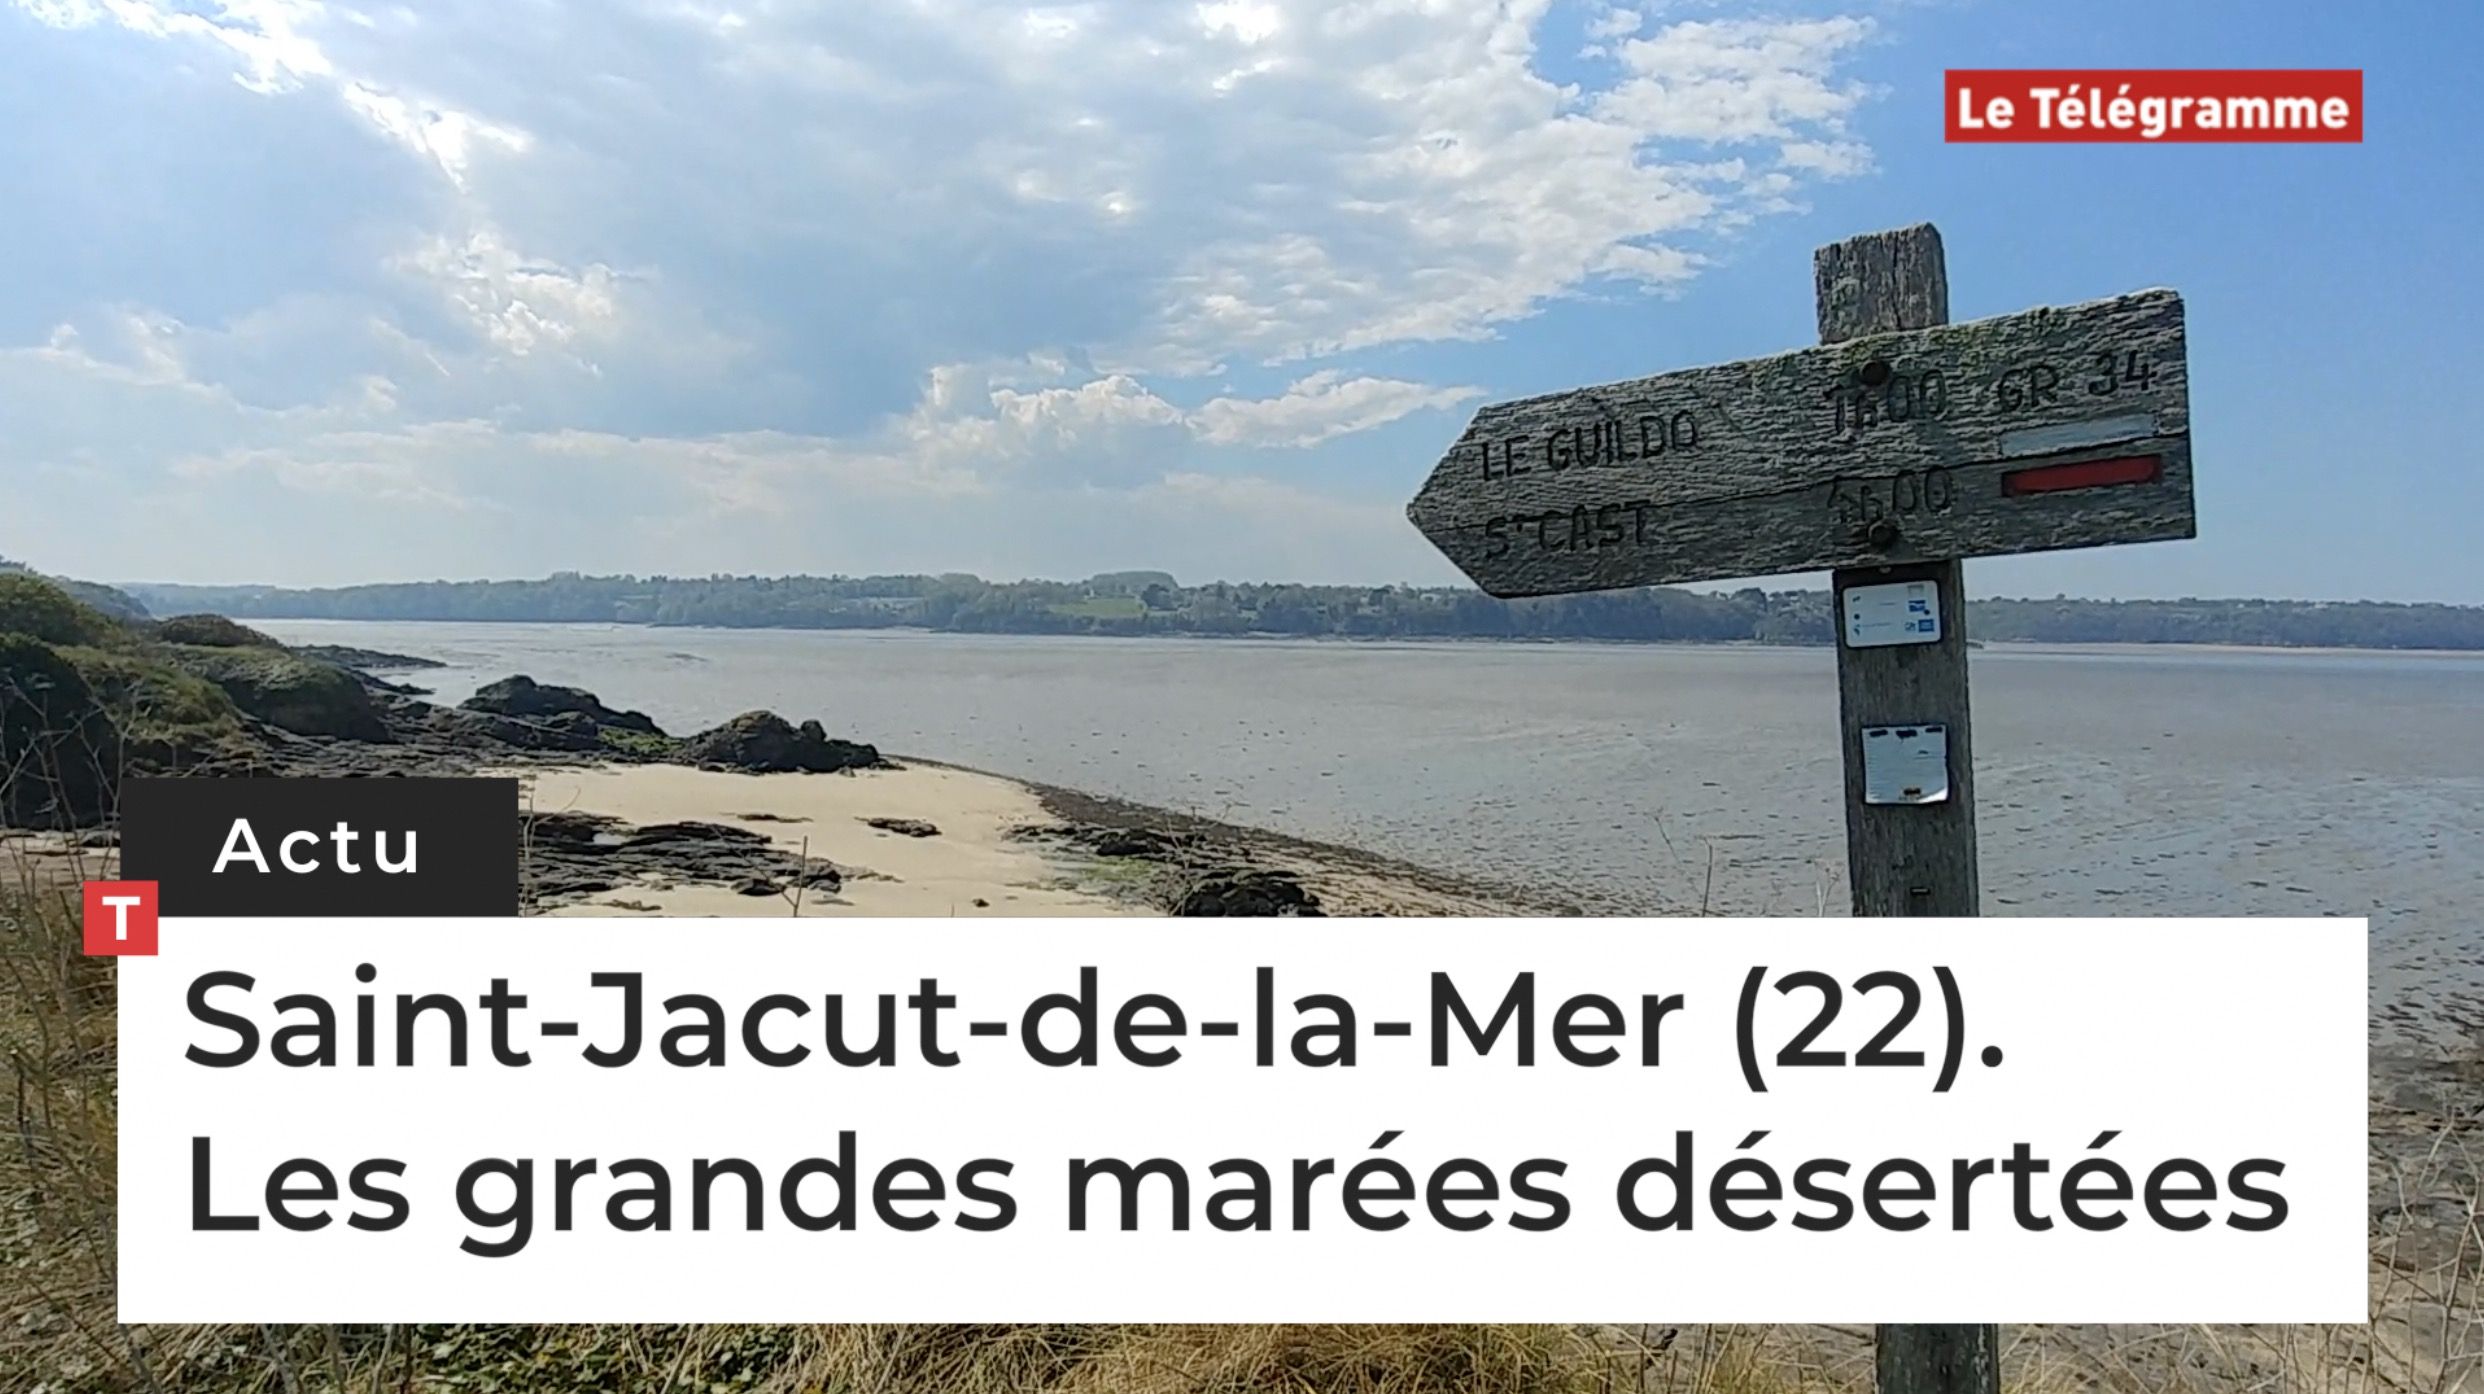 Saint-Jacut-de-la-Mer (22). Les grandes marées désertées (Le Télégramme)